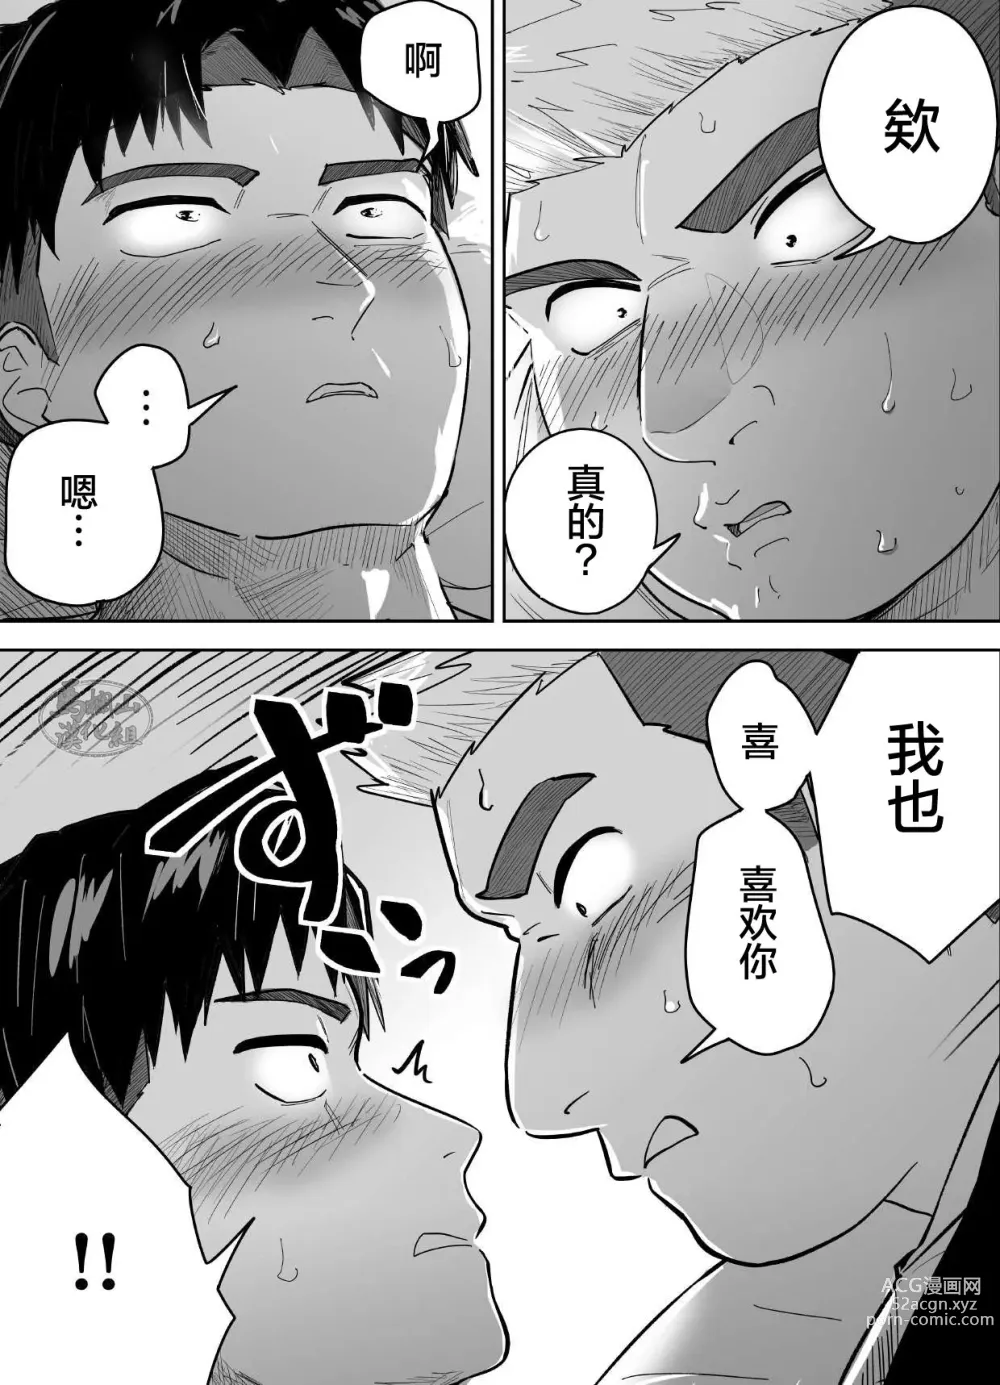 Page 12 of manga 片思いしてるガチムチ同級生に襲われる話